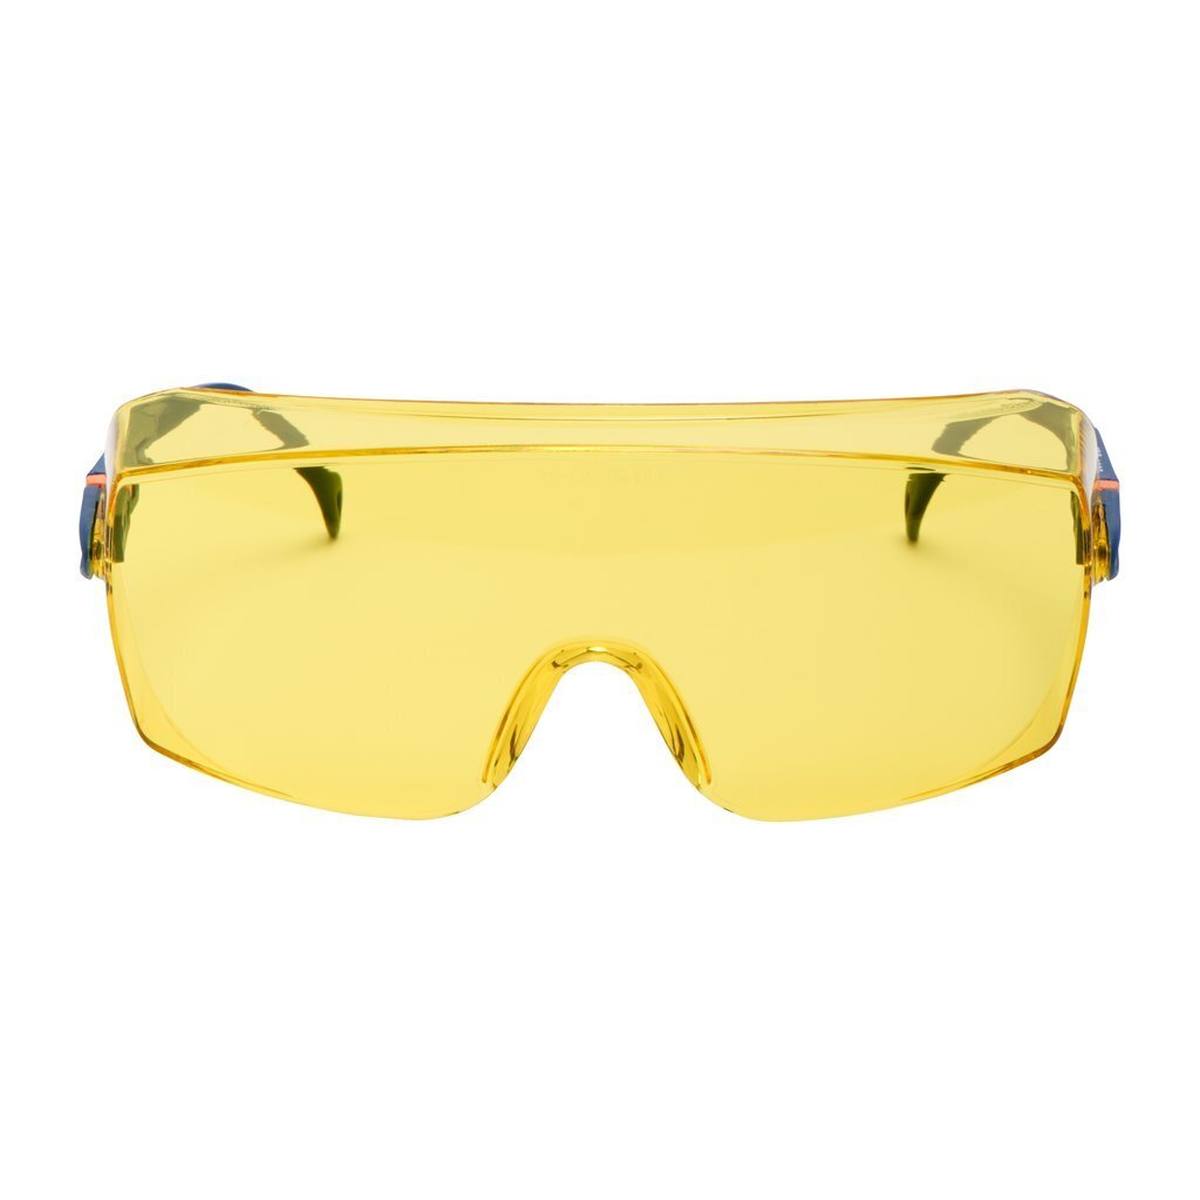 3M 2802 Gafas de protección AS/UV, PC, tintadas en amarillo, ajustables, ideales como sobregafas para usuarios de gafas